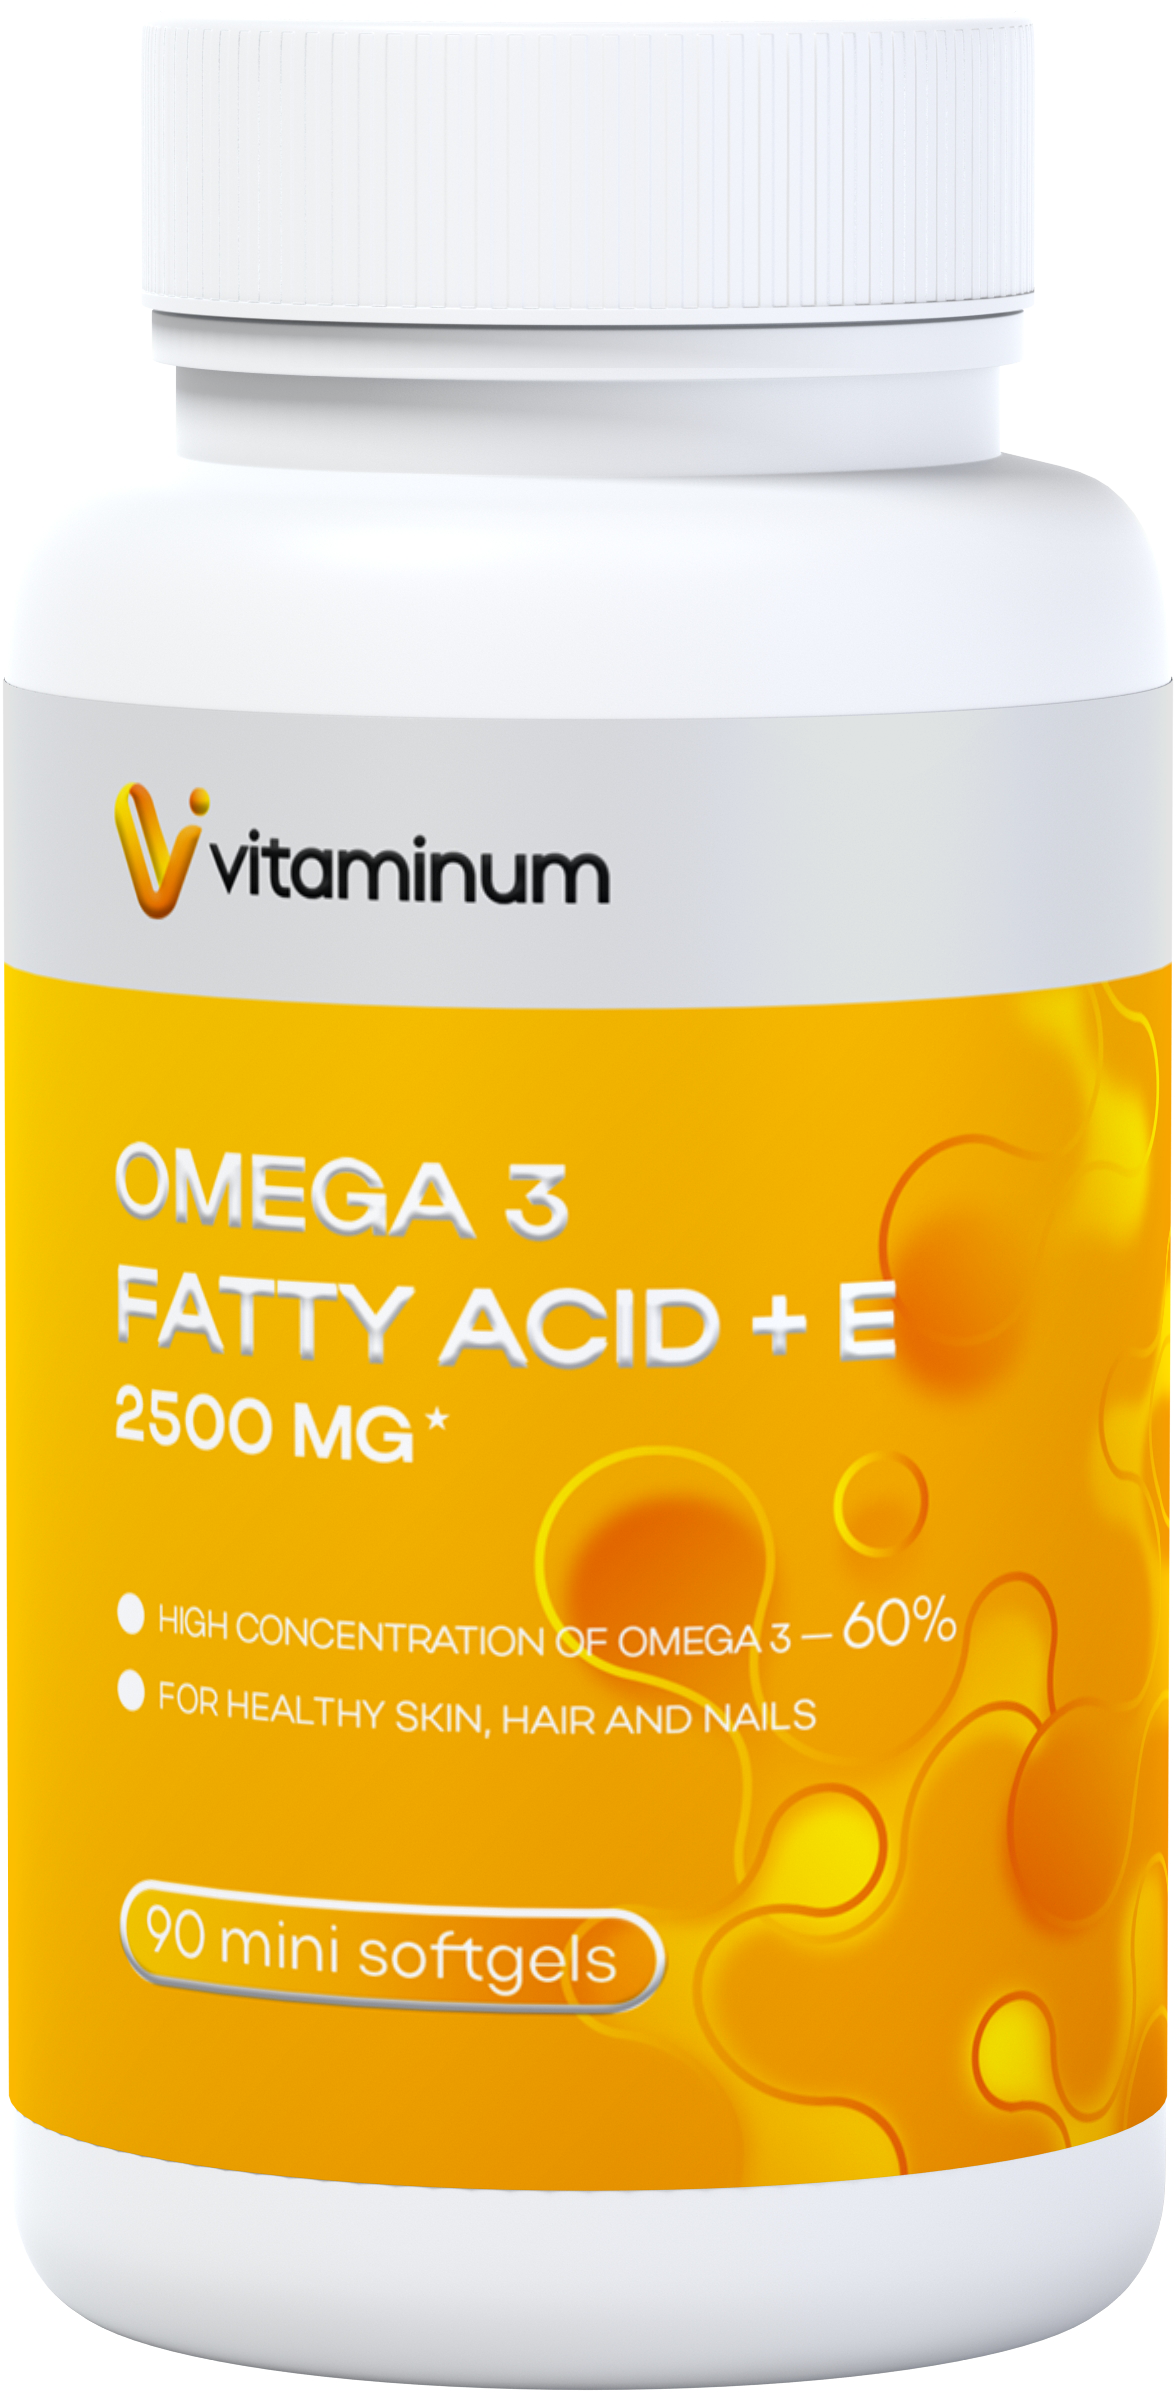  Vitaminum ОМЕГА 3 60% + витамин Е (2500 MG*) 90 капсул 700 мг   в Свободном